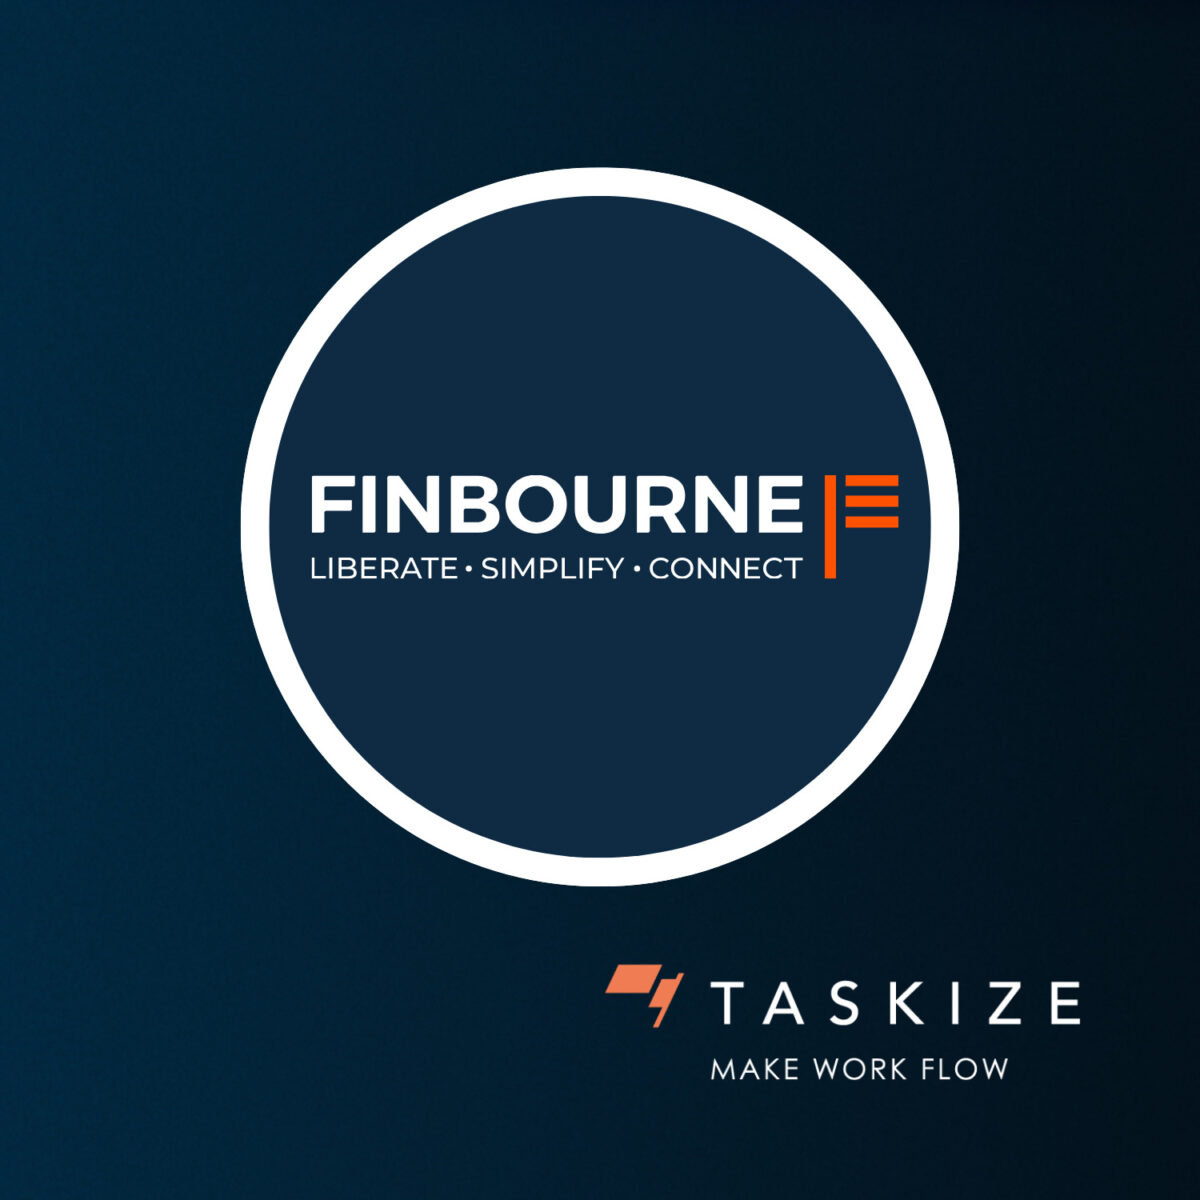 taskize-finbourne-integration